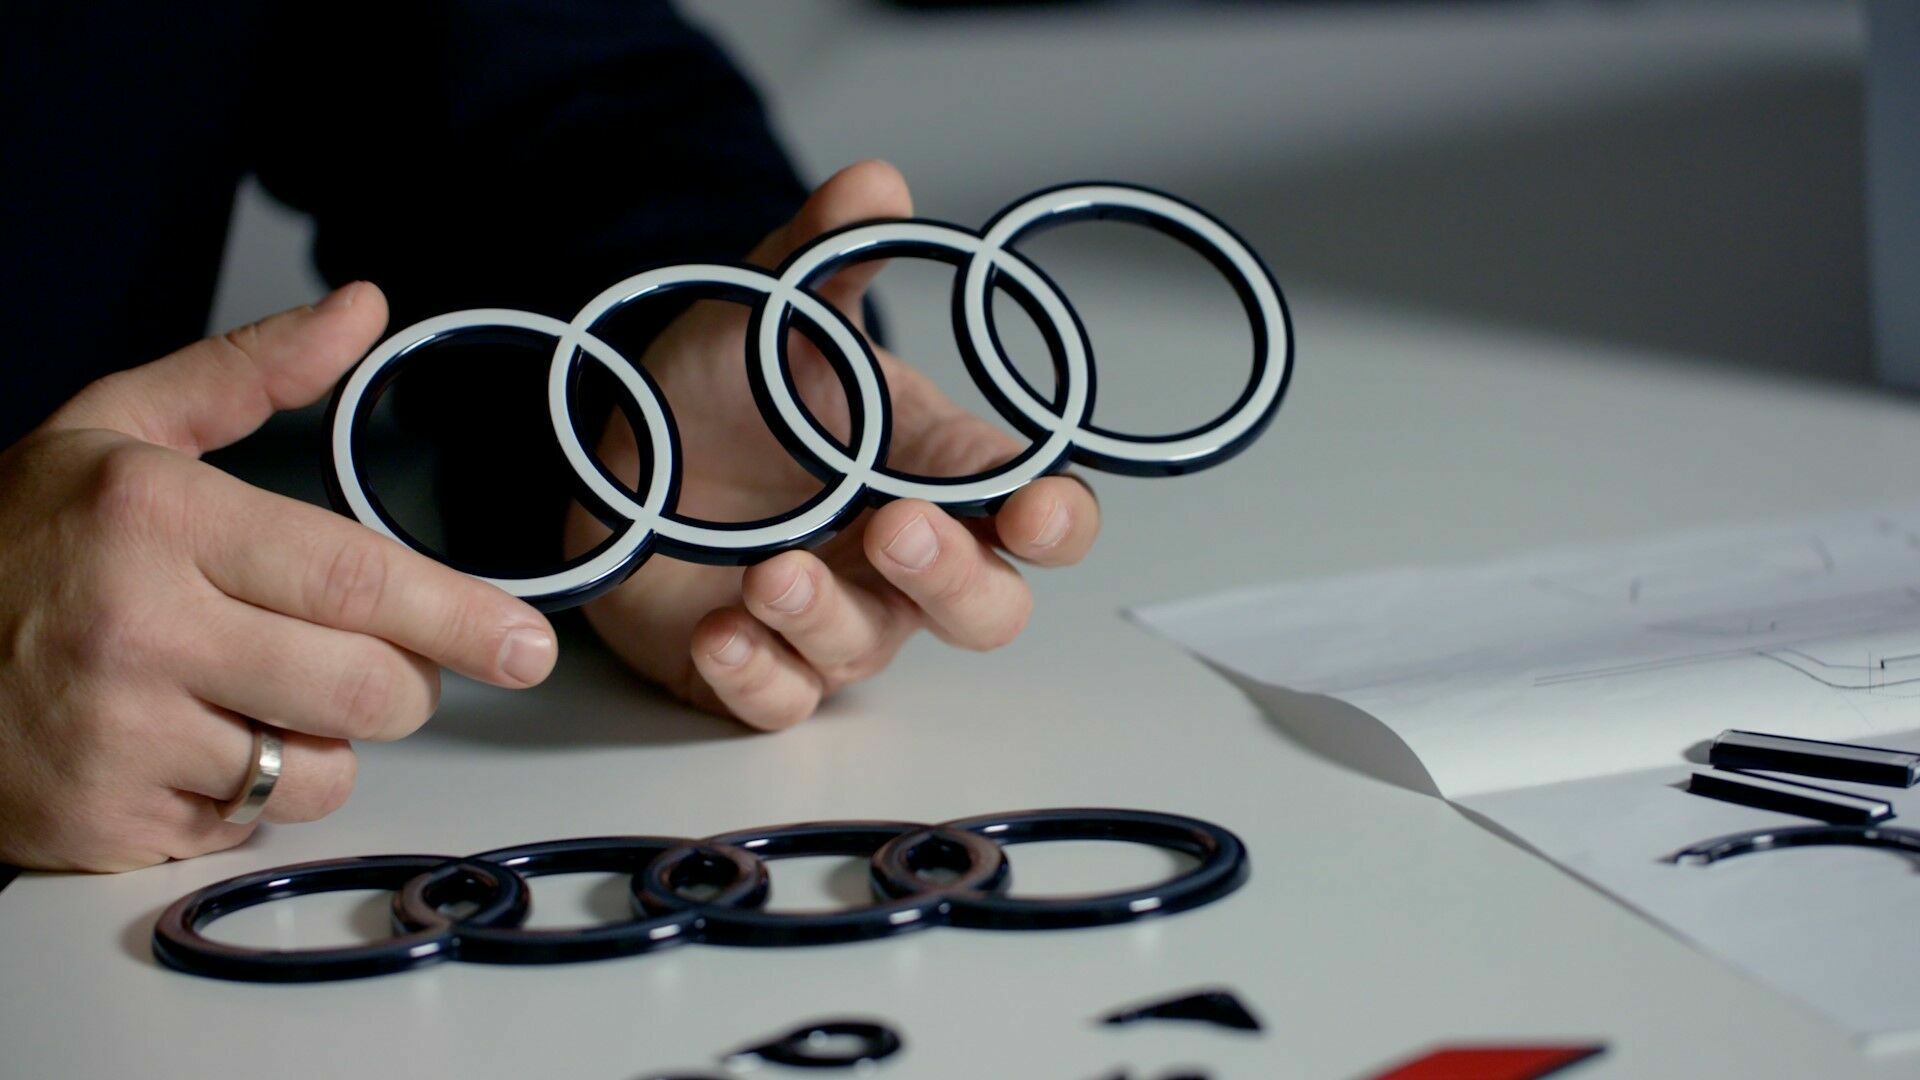 Audi Rings